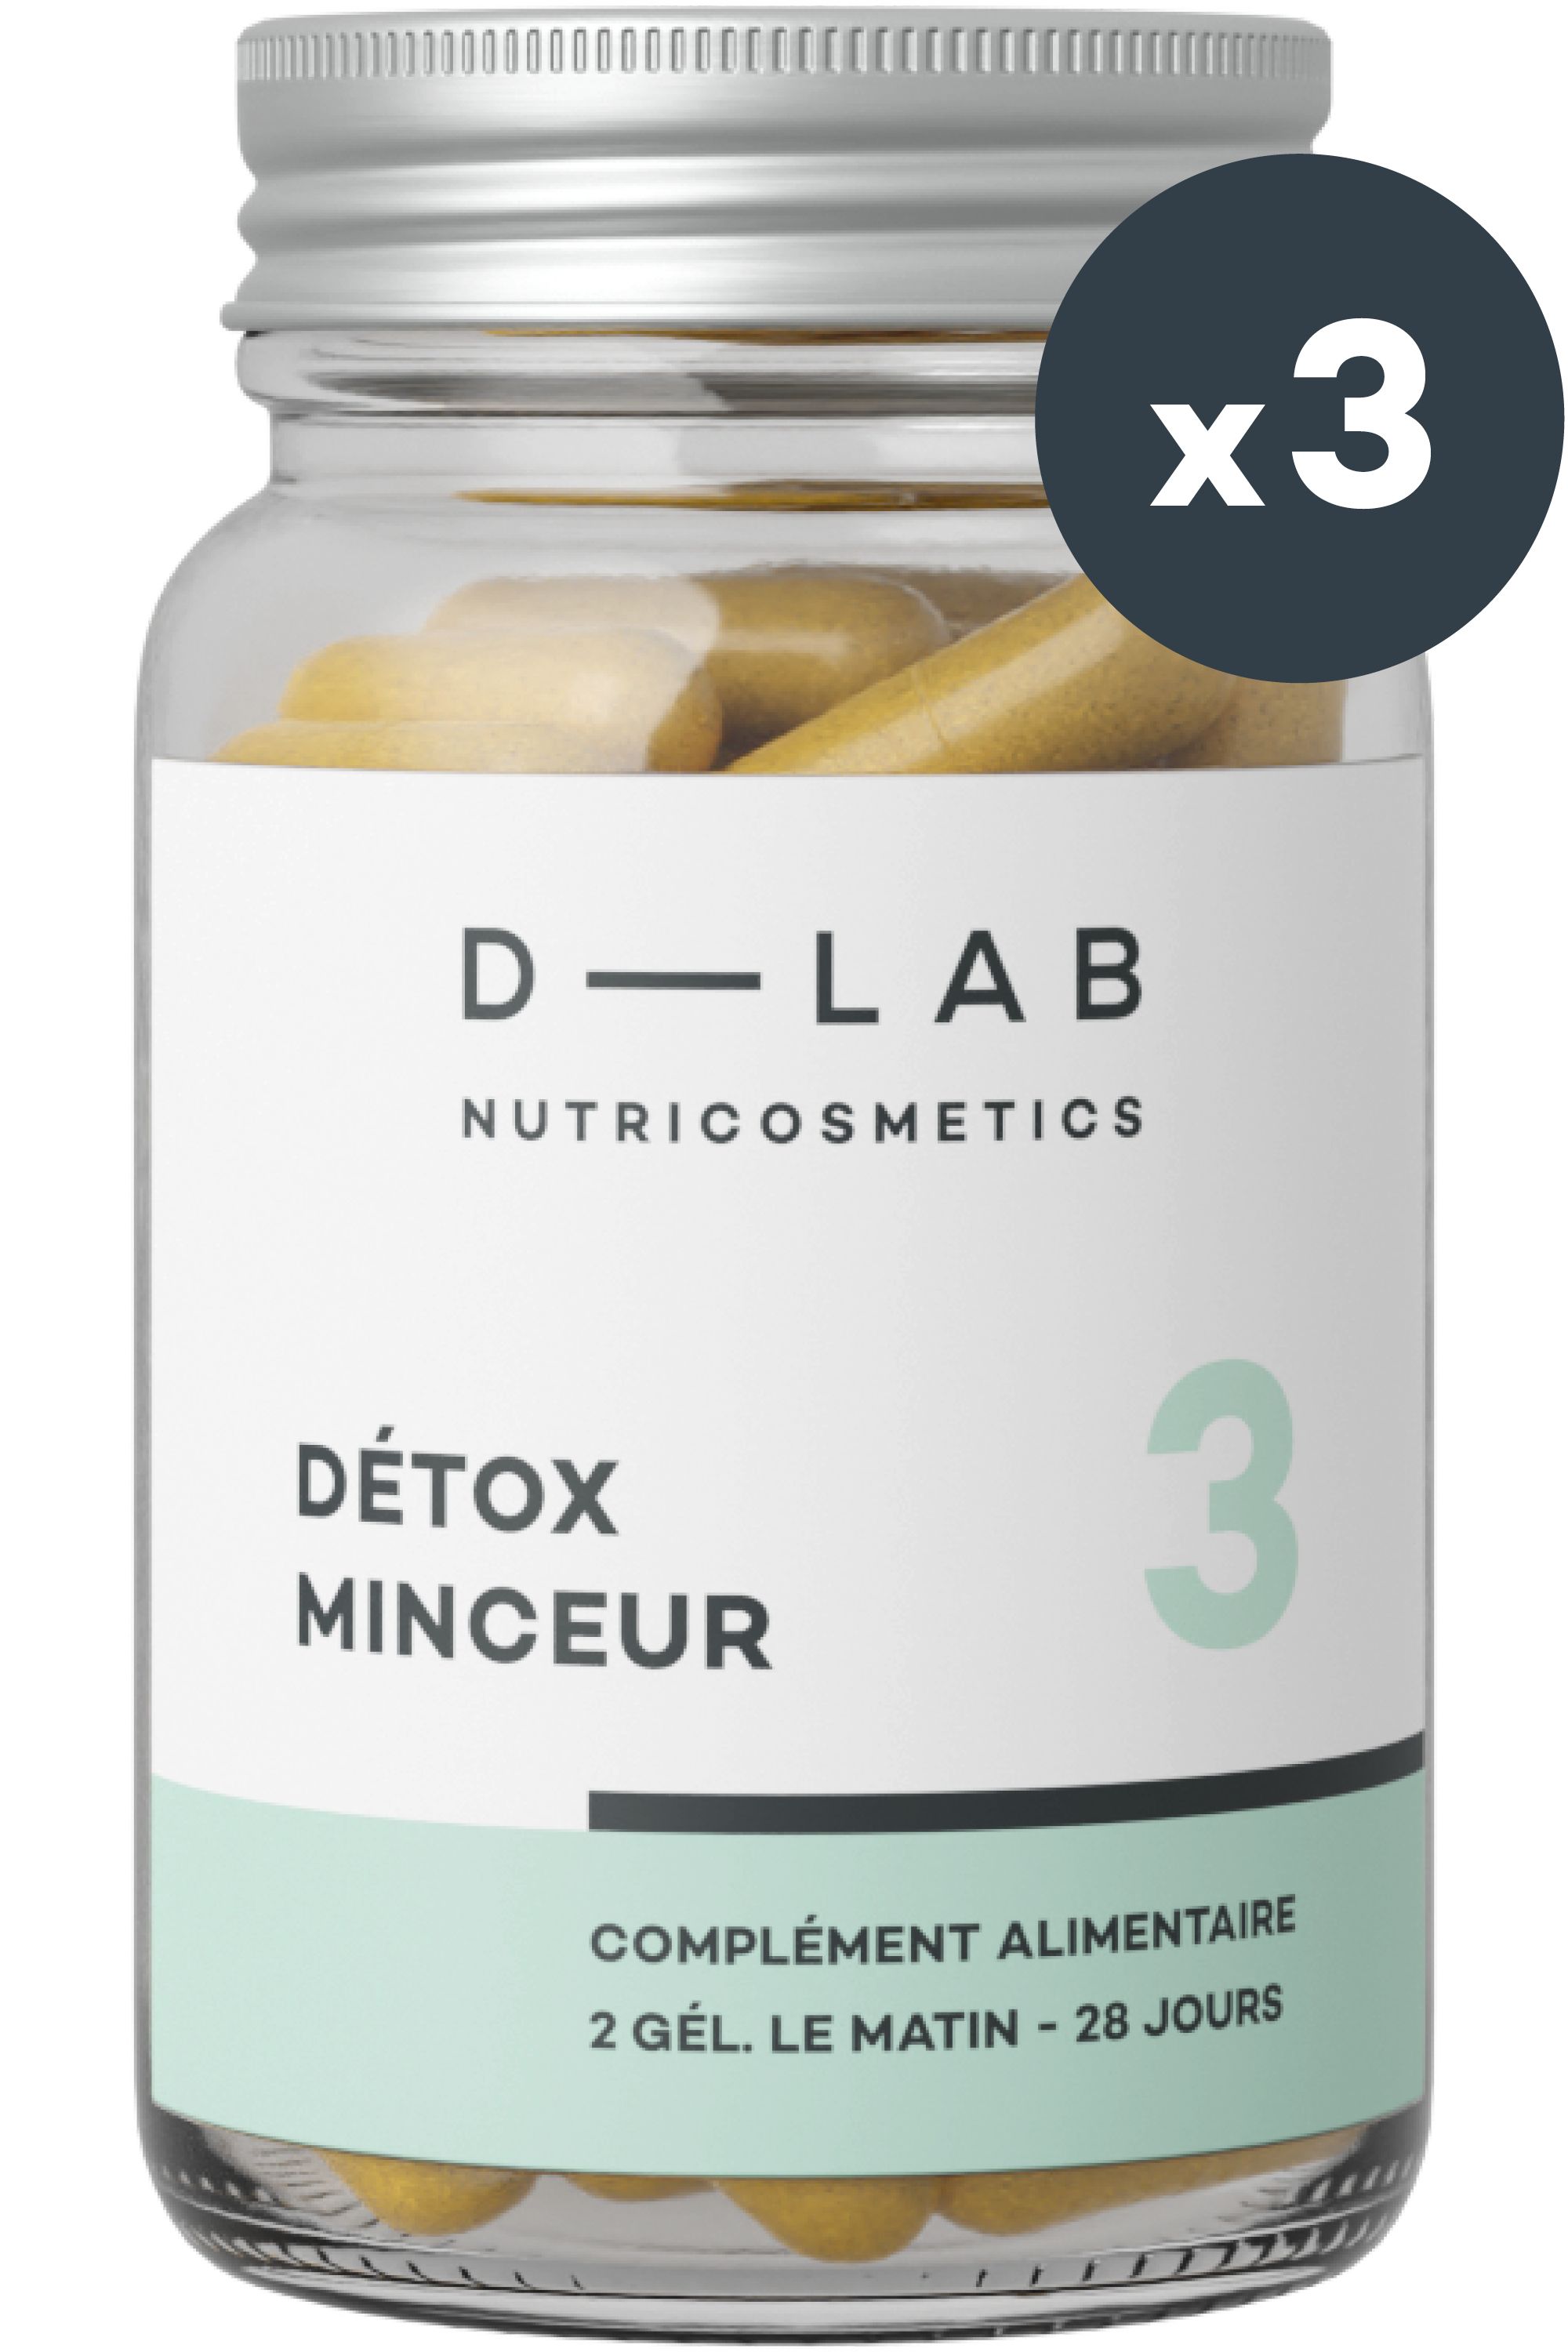 D-LAB Nutricosmetics - Complément alimentaire Détox Minceur